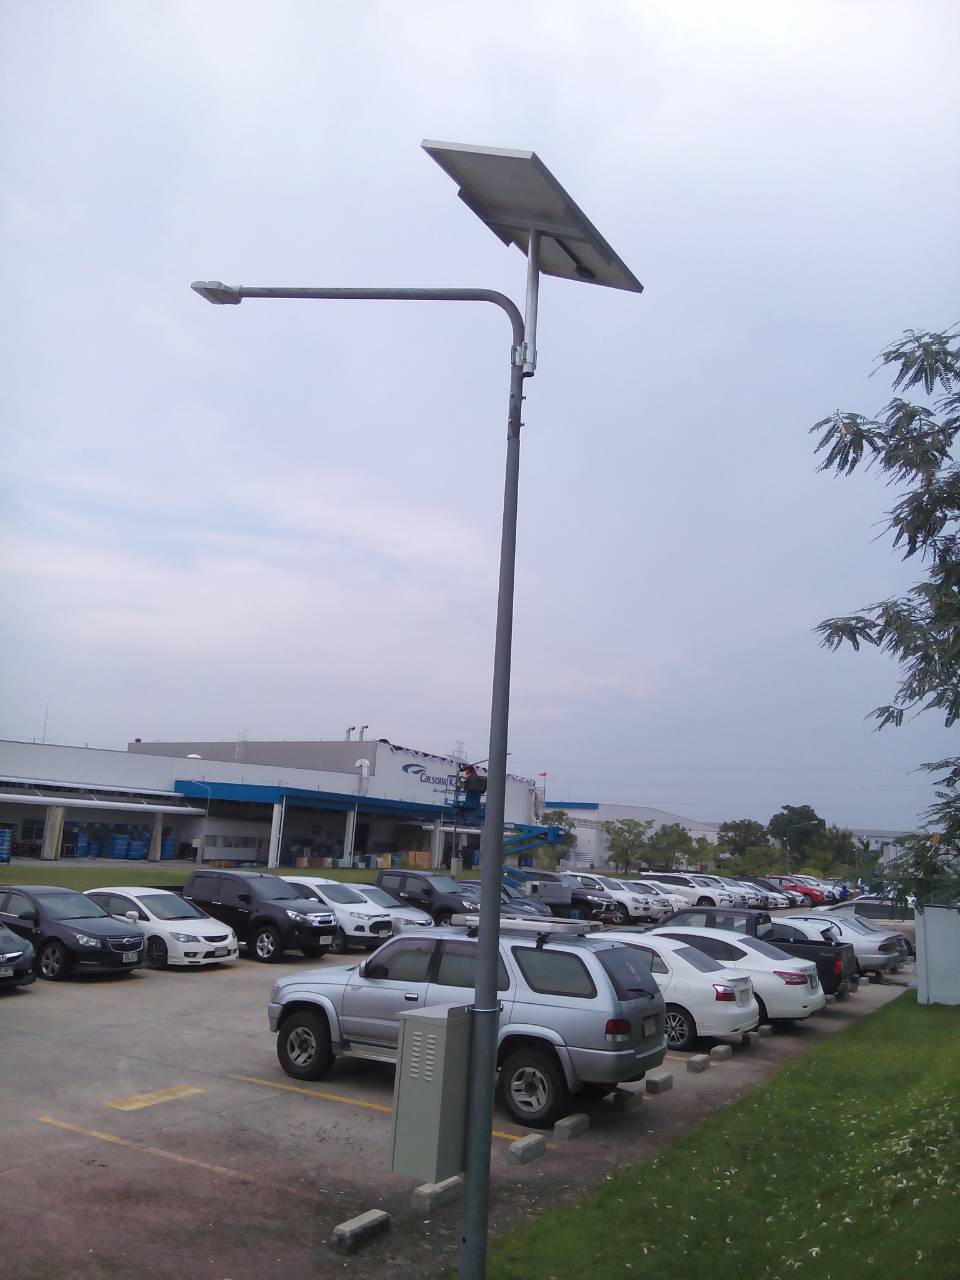 ผลงานการติดตั้งโคมไฟถนน LED ระบบโซล่าเซลล์ (SOLAR LED STREET LIGHT) @บริษัทผลิตชิ้นส่วนยานยนต์